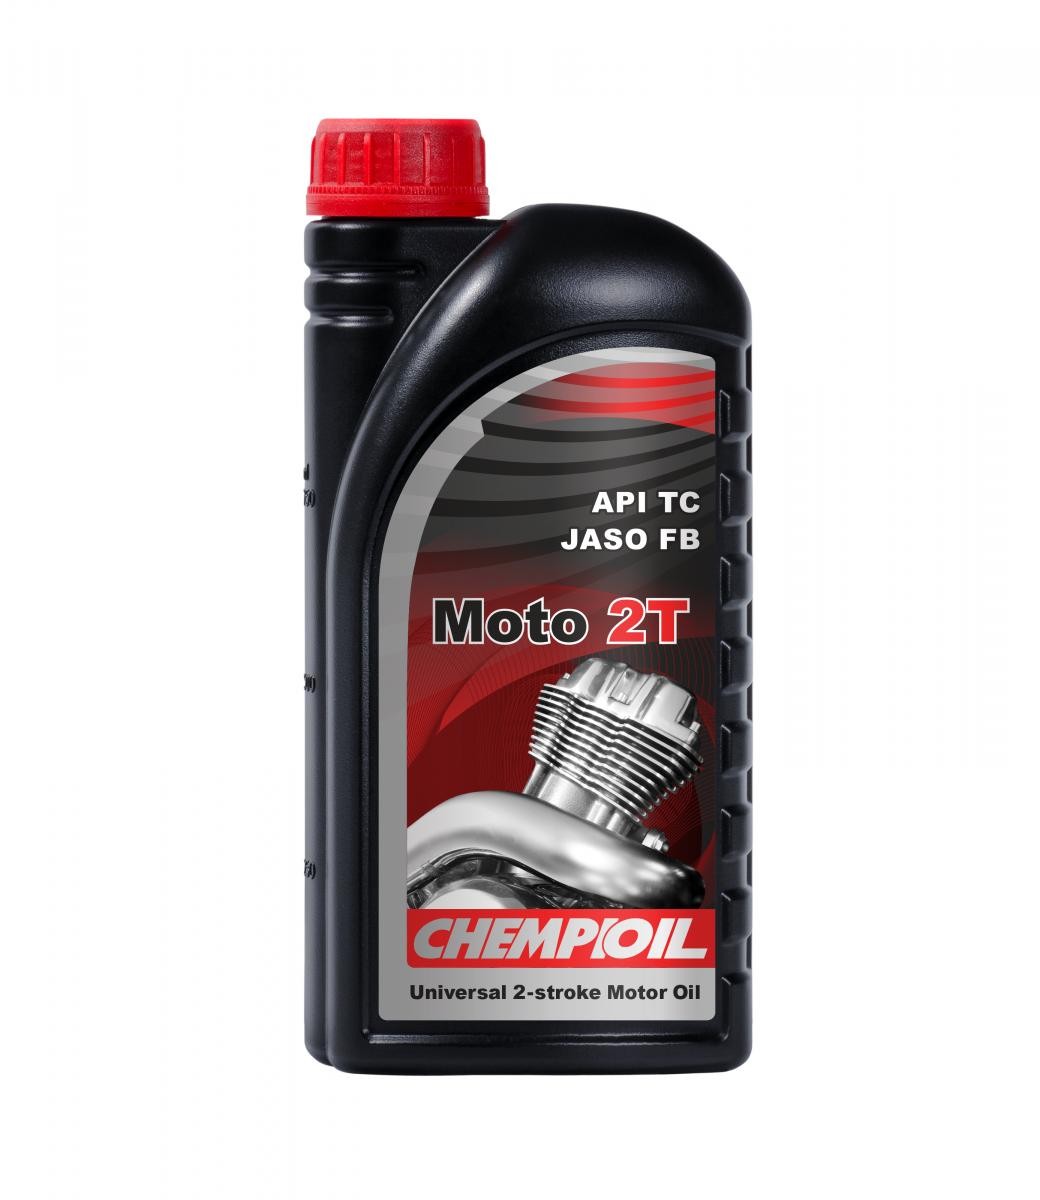 Automobile oil JASO FB CHEMPIOIL - CH9201-1 MOTO, 2T